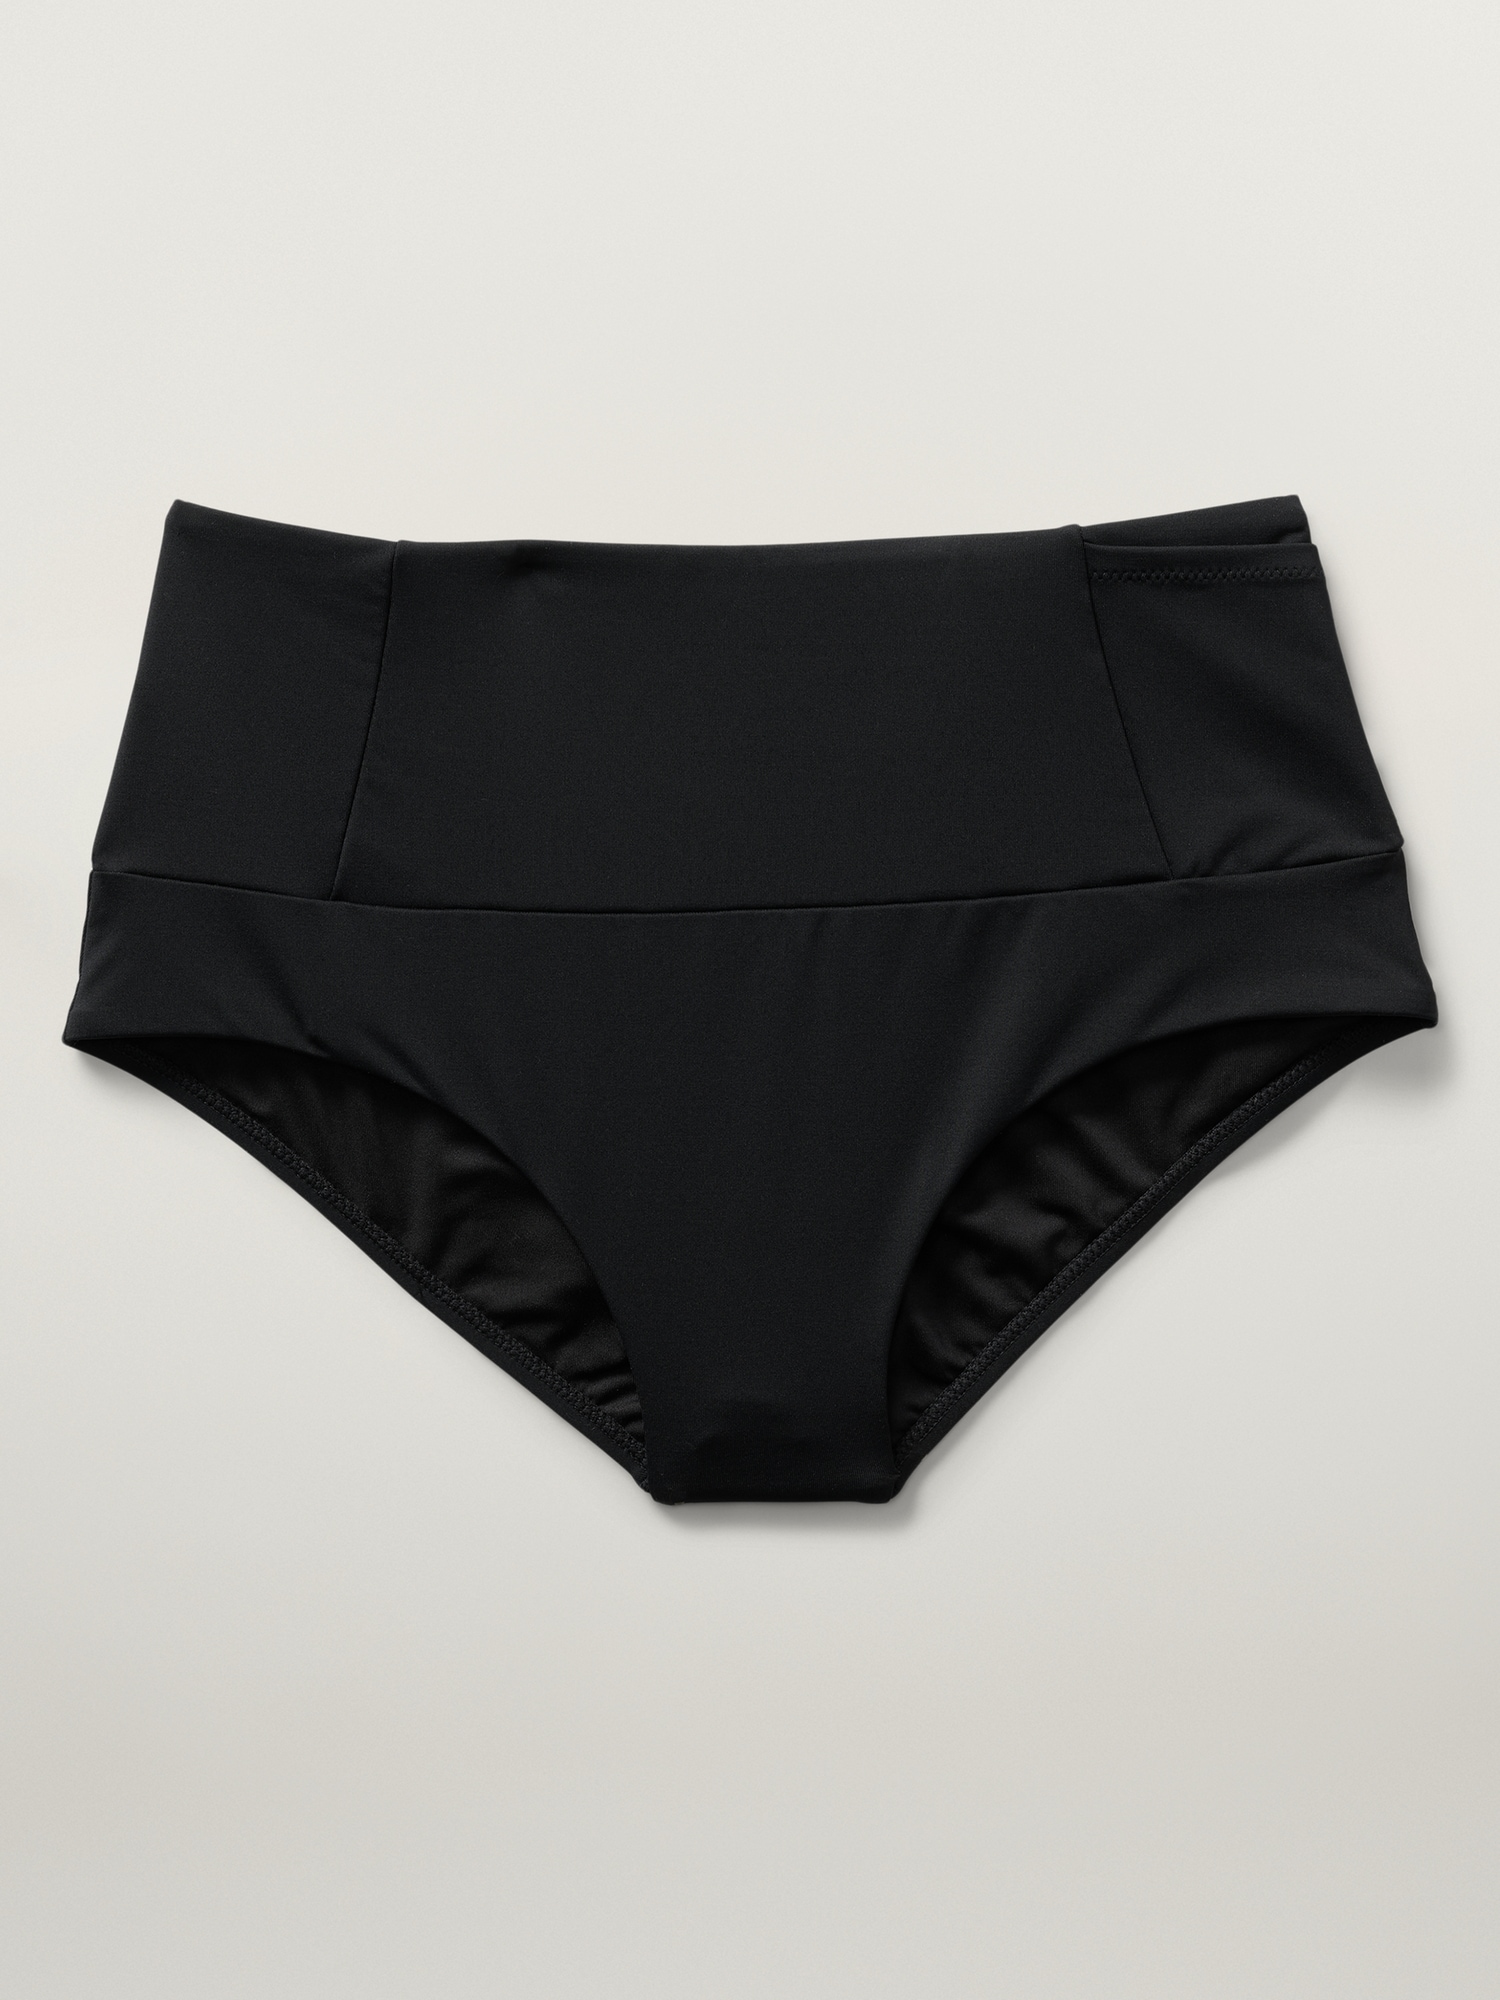 Ultra High Waist Bikini Bottom - Black